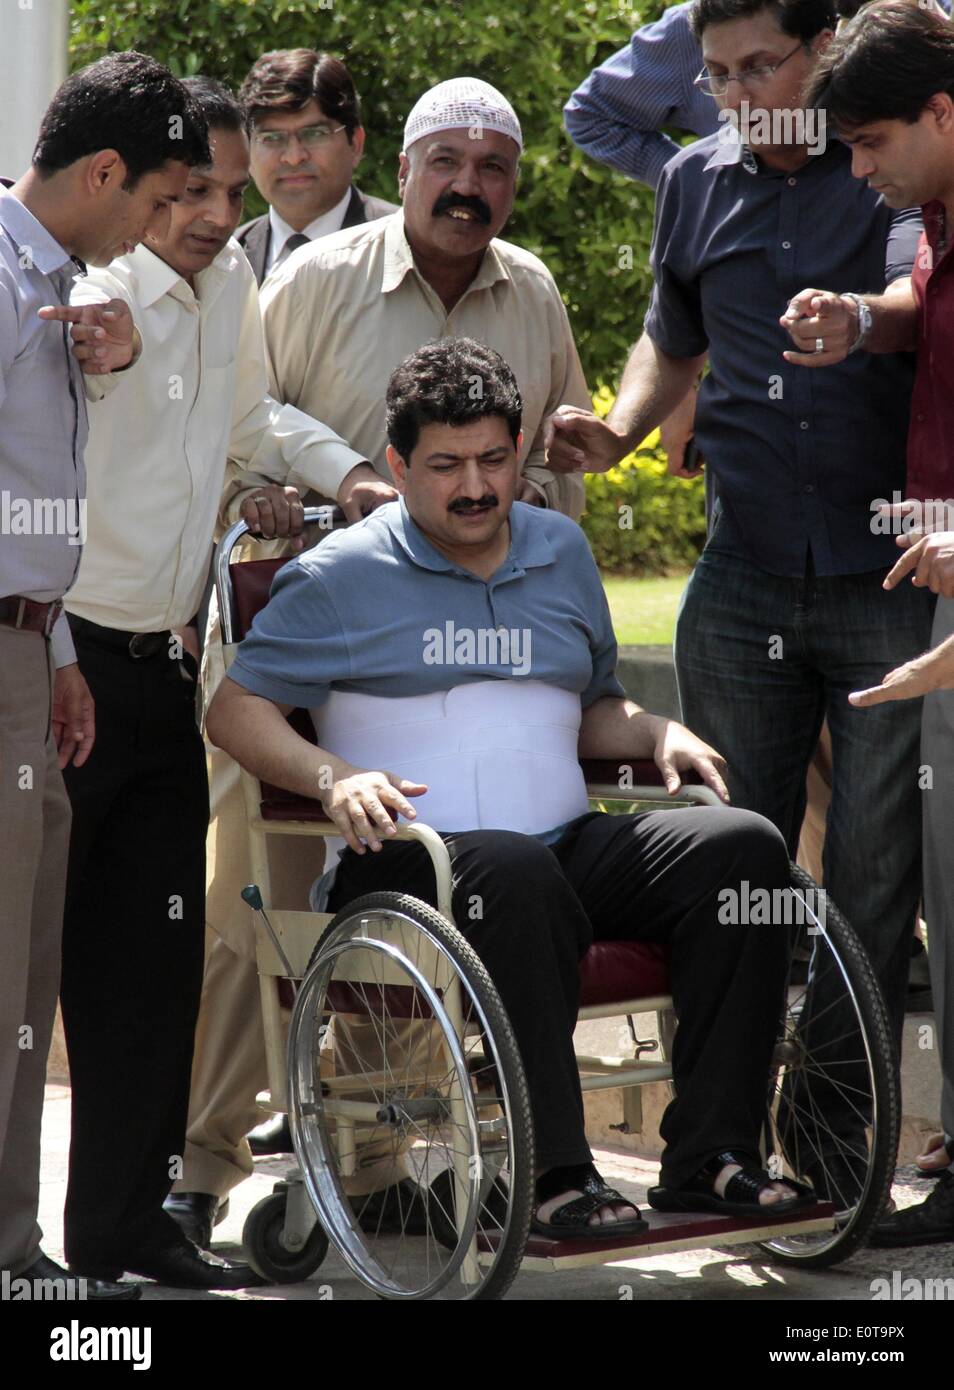 Islamabad, Pakistan. 19 mai, 2014. Journaliste de télévision pakistanais leader Hamid Mir, (C), qui a survécu à une attaque par gumen Avril à Karachi, est entouré de journalistes, il quitte la Cour suprême dans un fauteuil roulant après sa comparution devant la commission judiciaire à Islamabad le 19 mai 2014. Les journalistes au Pakistan sont "en état de siège", Amnesty International a mis en garde, vivre avec la menace constante de violence de la part d'agences de renseignements, des groupes armés comme les Talibans et même les partis politiques. Credit : PACIFIC PRESS/Alamy Live News Banque D'Images